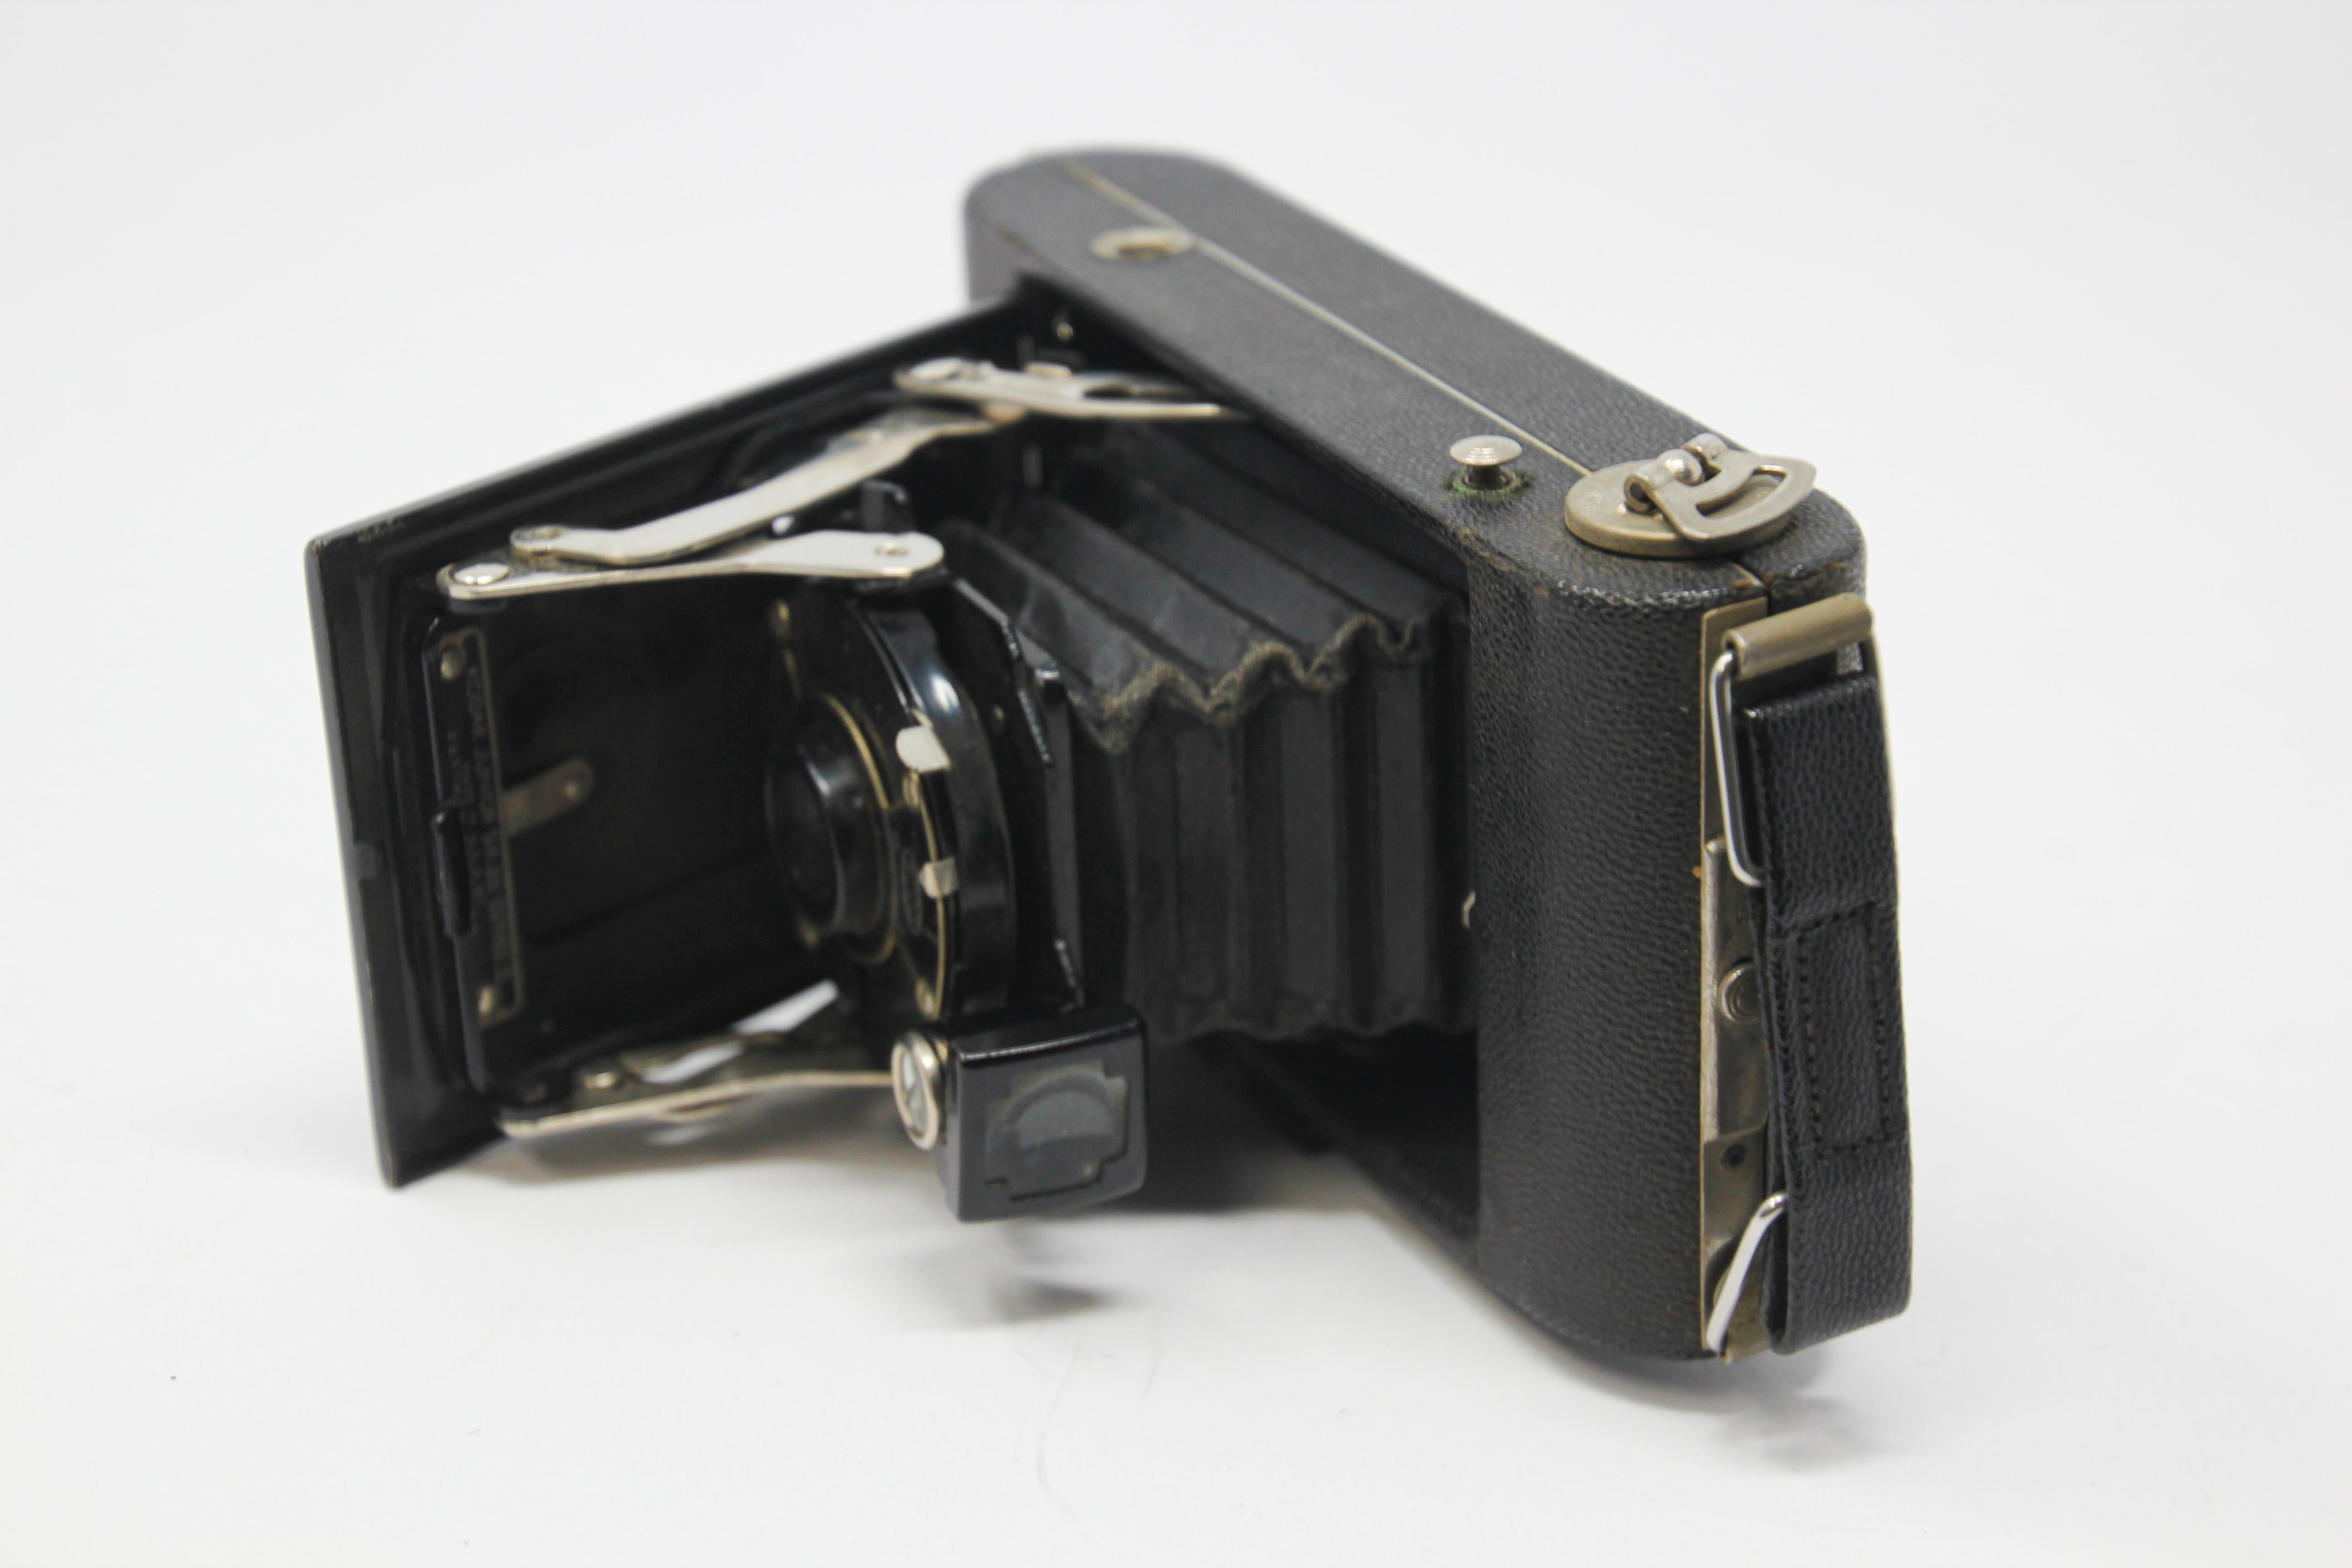 Appareil photo de collection Kodak des années 1920 dans un étui en cuir rigide.
Avec étui en cuir d'origine, estampillé fabriqué en Belgique.
Antique No. 3A Special Autographic Folding Pocket Model C Kodak with Zeiss Kodak Anastigmat Lens 6.3.
Le